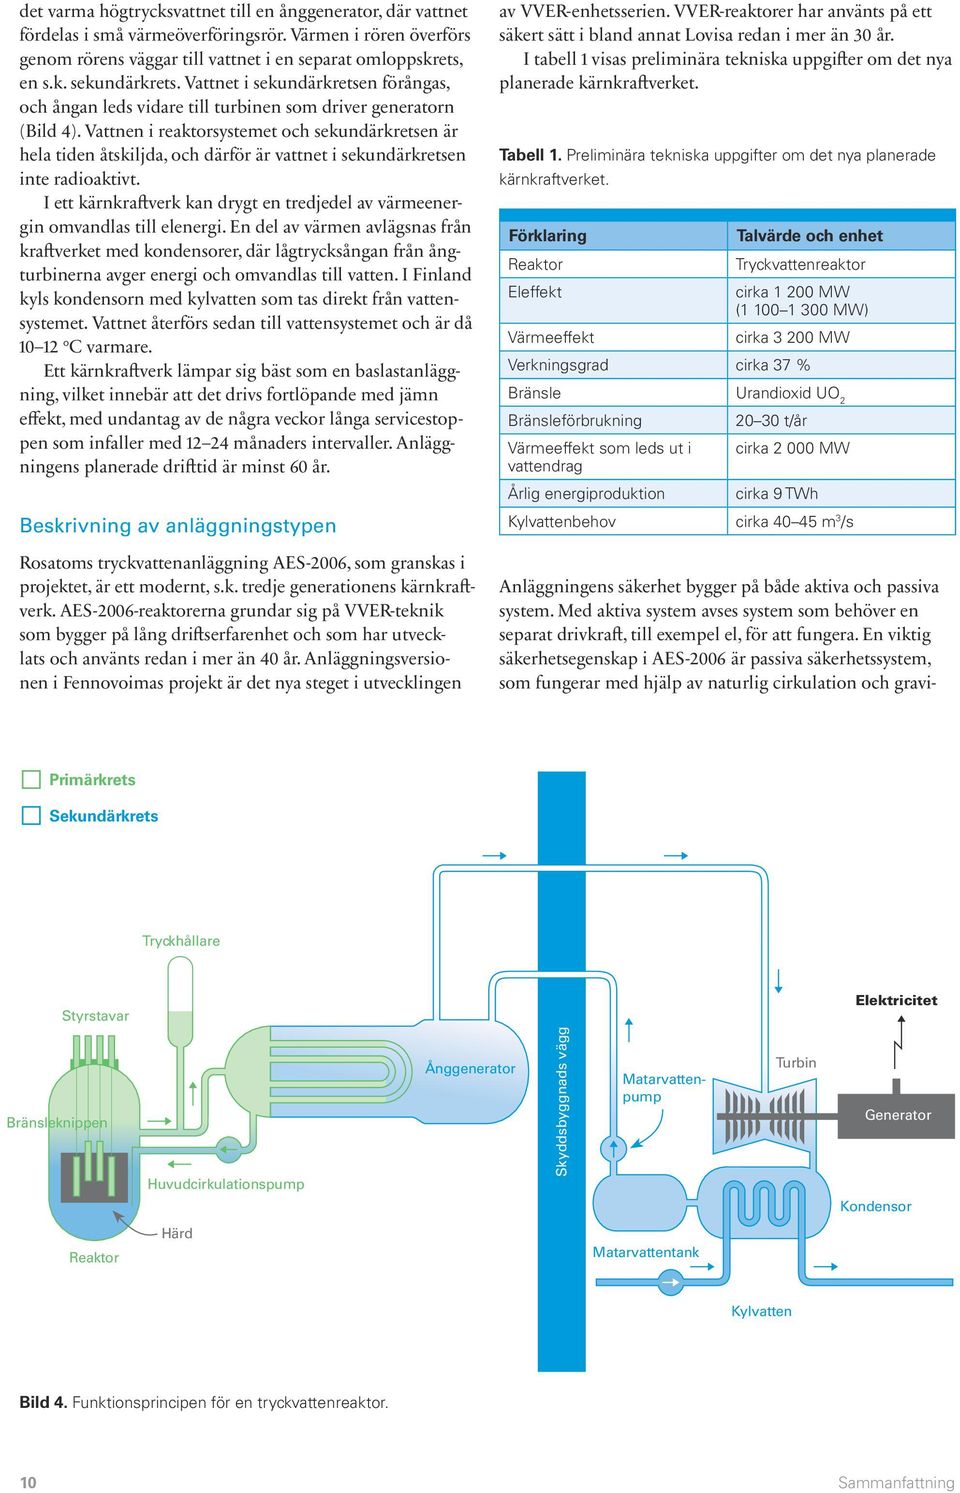 Vattnen i reaktorsystemet och sekundärkretsen är hela tiden åtskiljda, och därför är vattnet i sekundärkretsen inte radioaktivt.